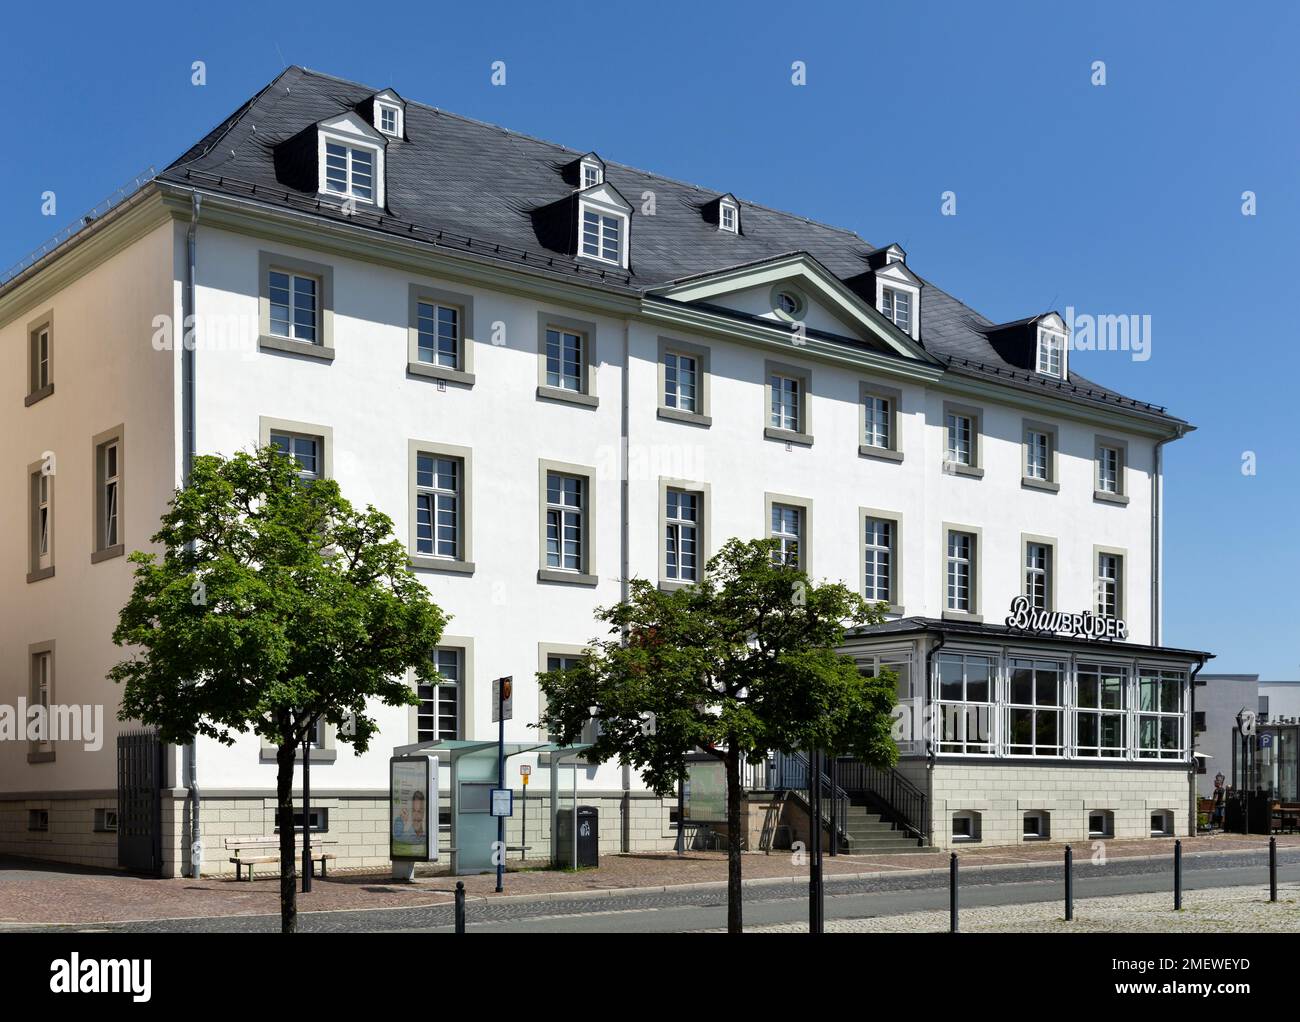 Government new town, Classicism quarter, Haus Husemann, formerly Gasthof Koenig von Preussen, Arnsberg, Sauerland, North Rhine-Westphalia, Germany Stock Photo